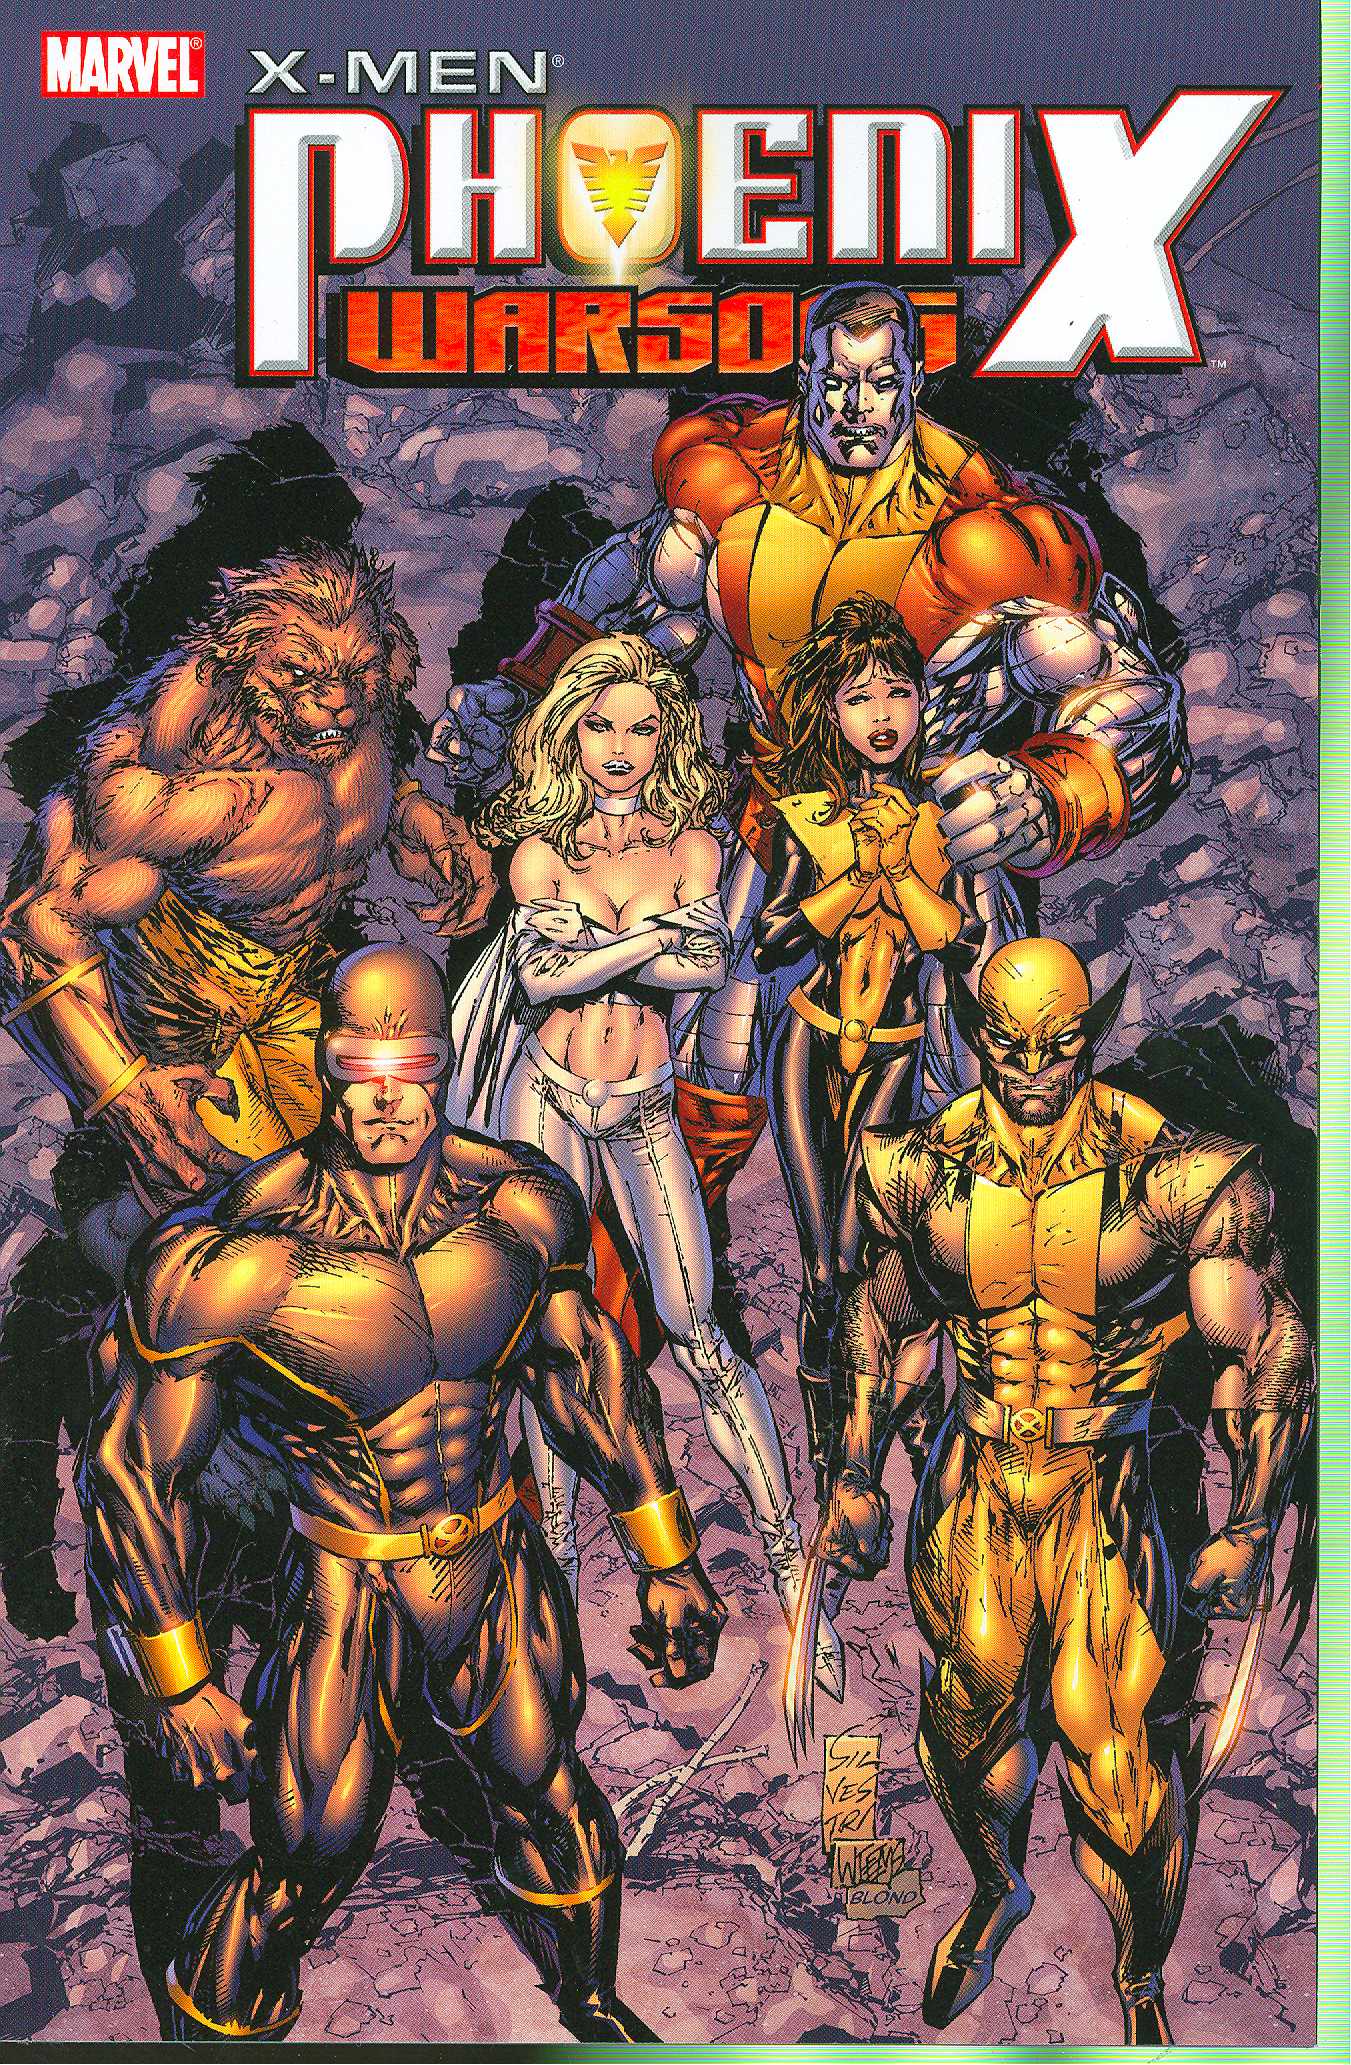 X-Men Graphic Novel Phoenix Warsong